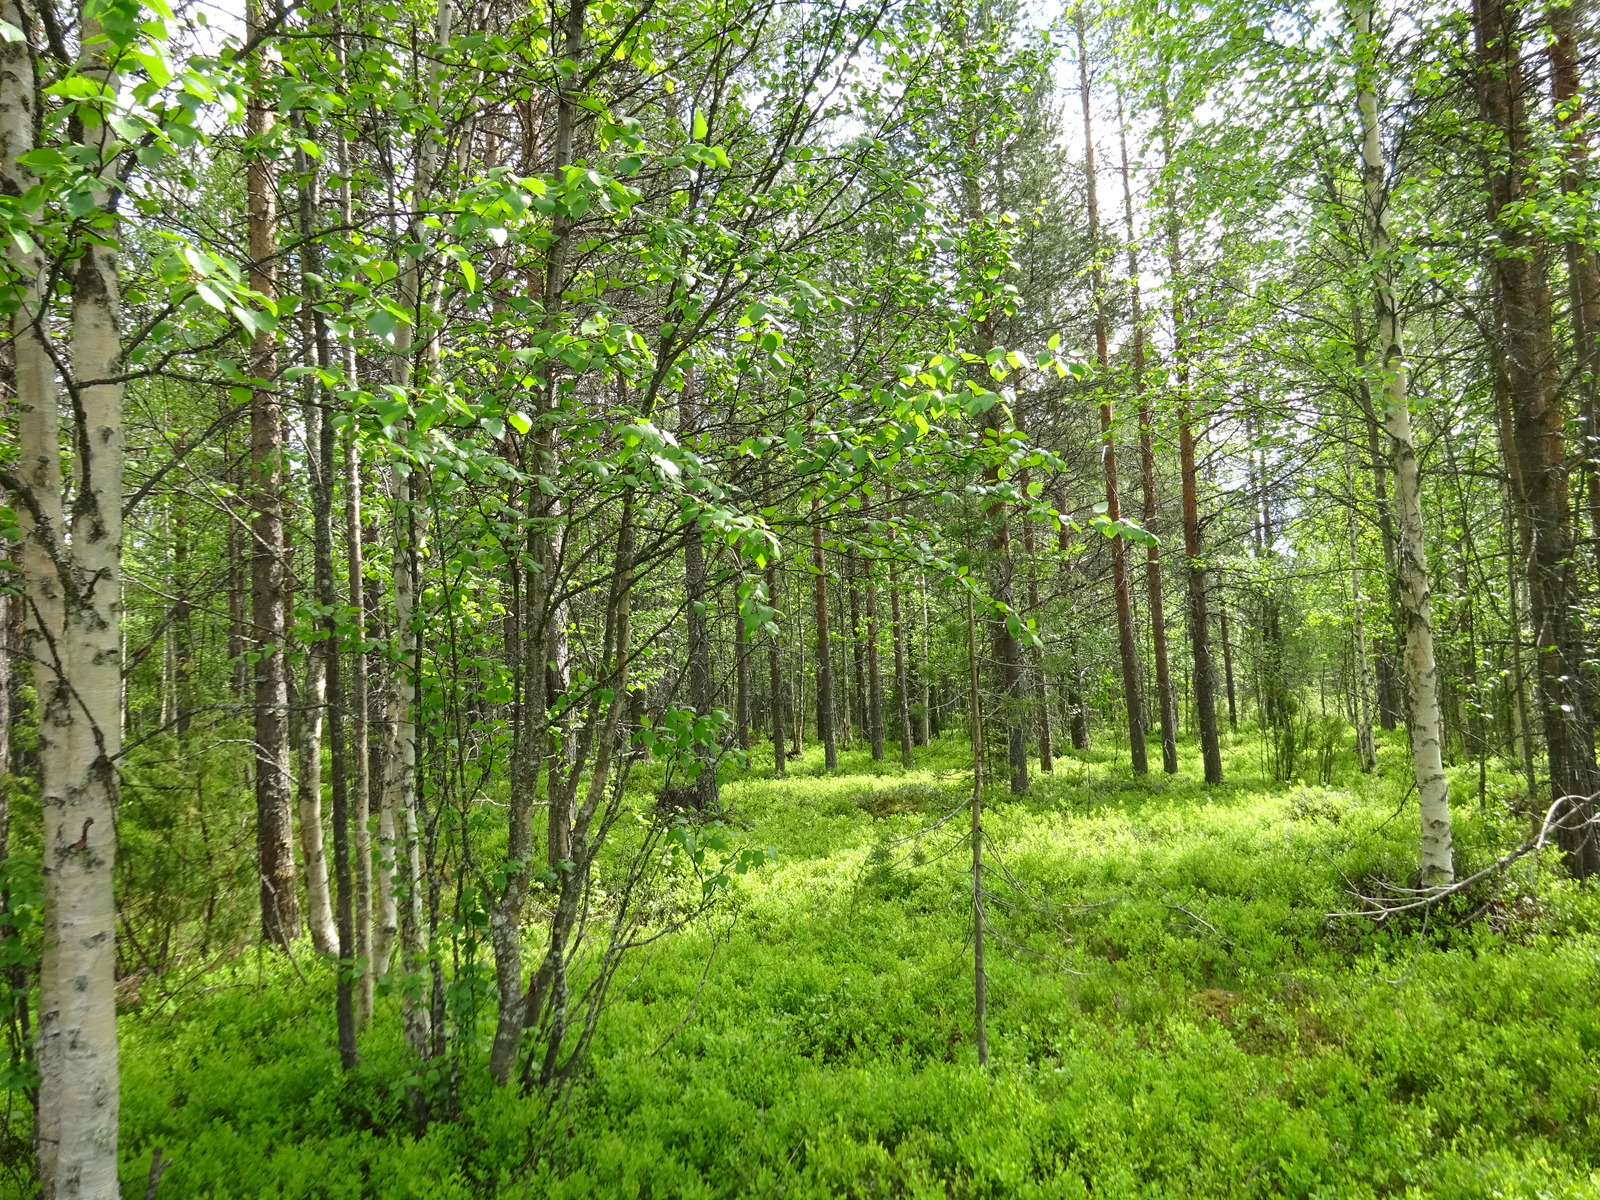 Kesäisen vehreä sekametsä, jonka aluskasvillisuutena on mustikanvarpuja.